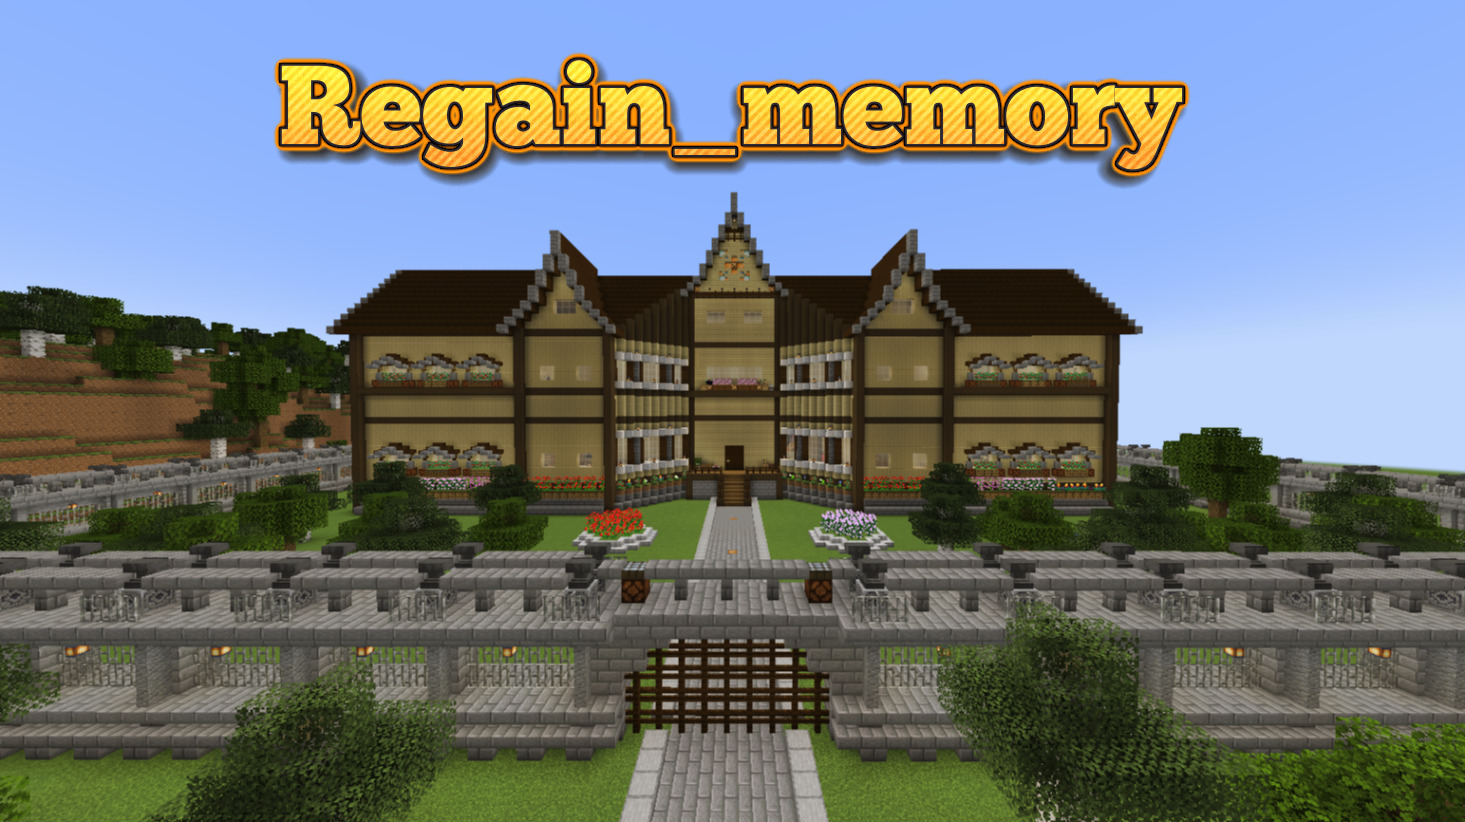 Regain_memory